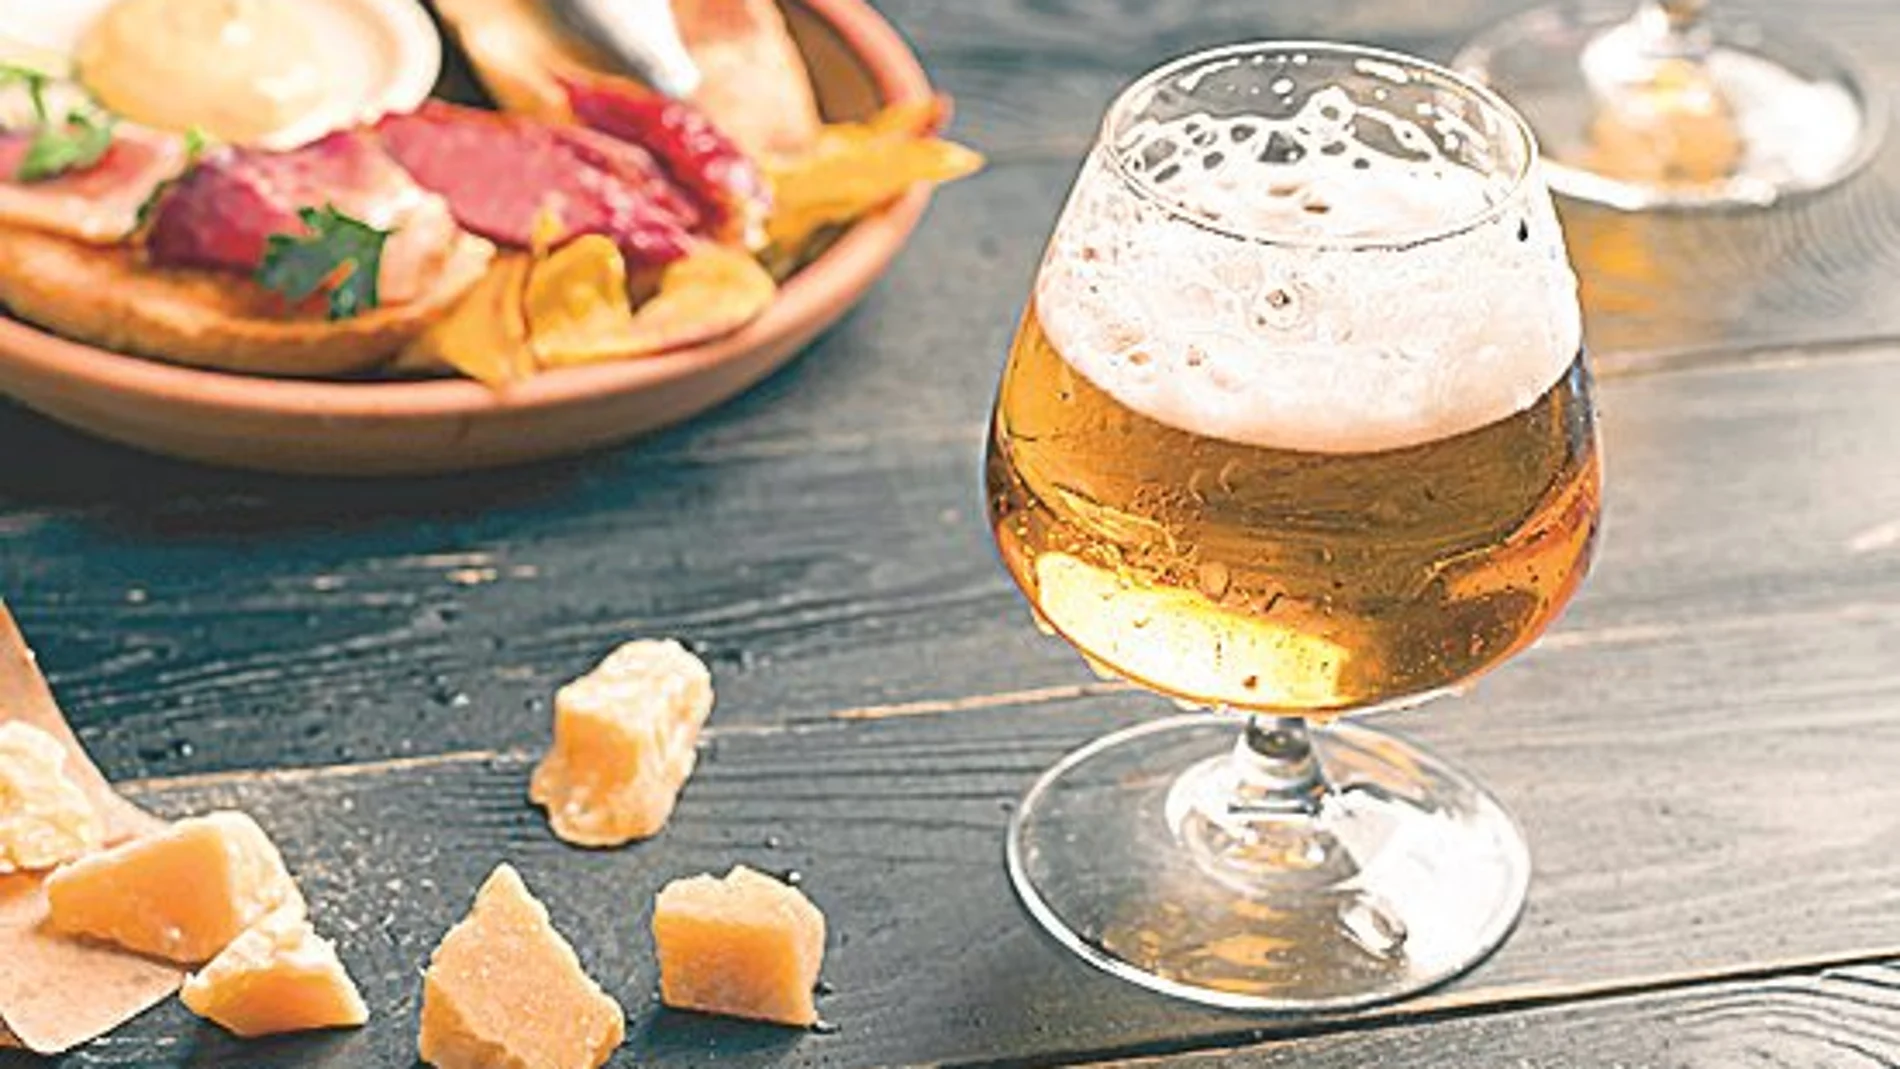 España es el segundo país de la Unión Europea en lo que a consumo diario de alcohol se refiere, pero ahí debemos incluir el consumo de otras bebidas alcohólicas como el vino